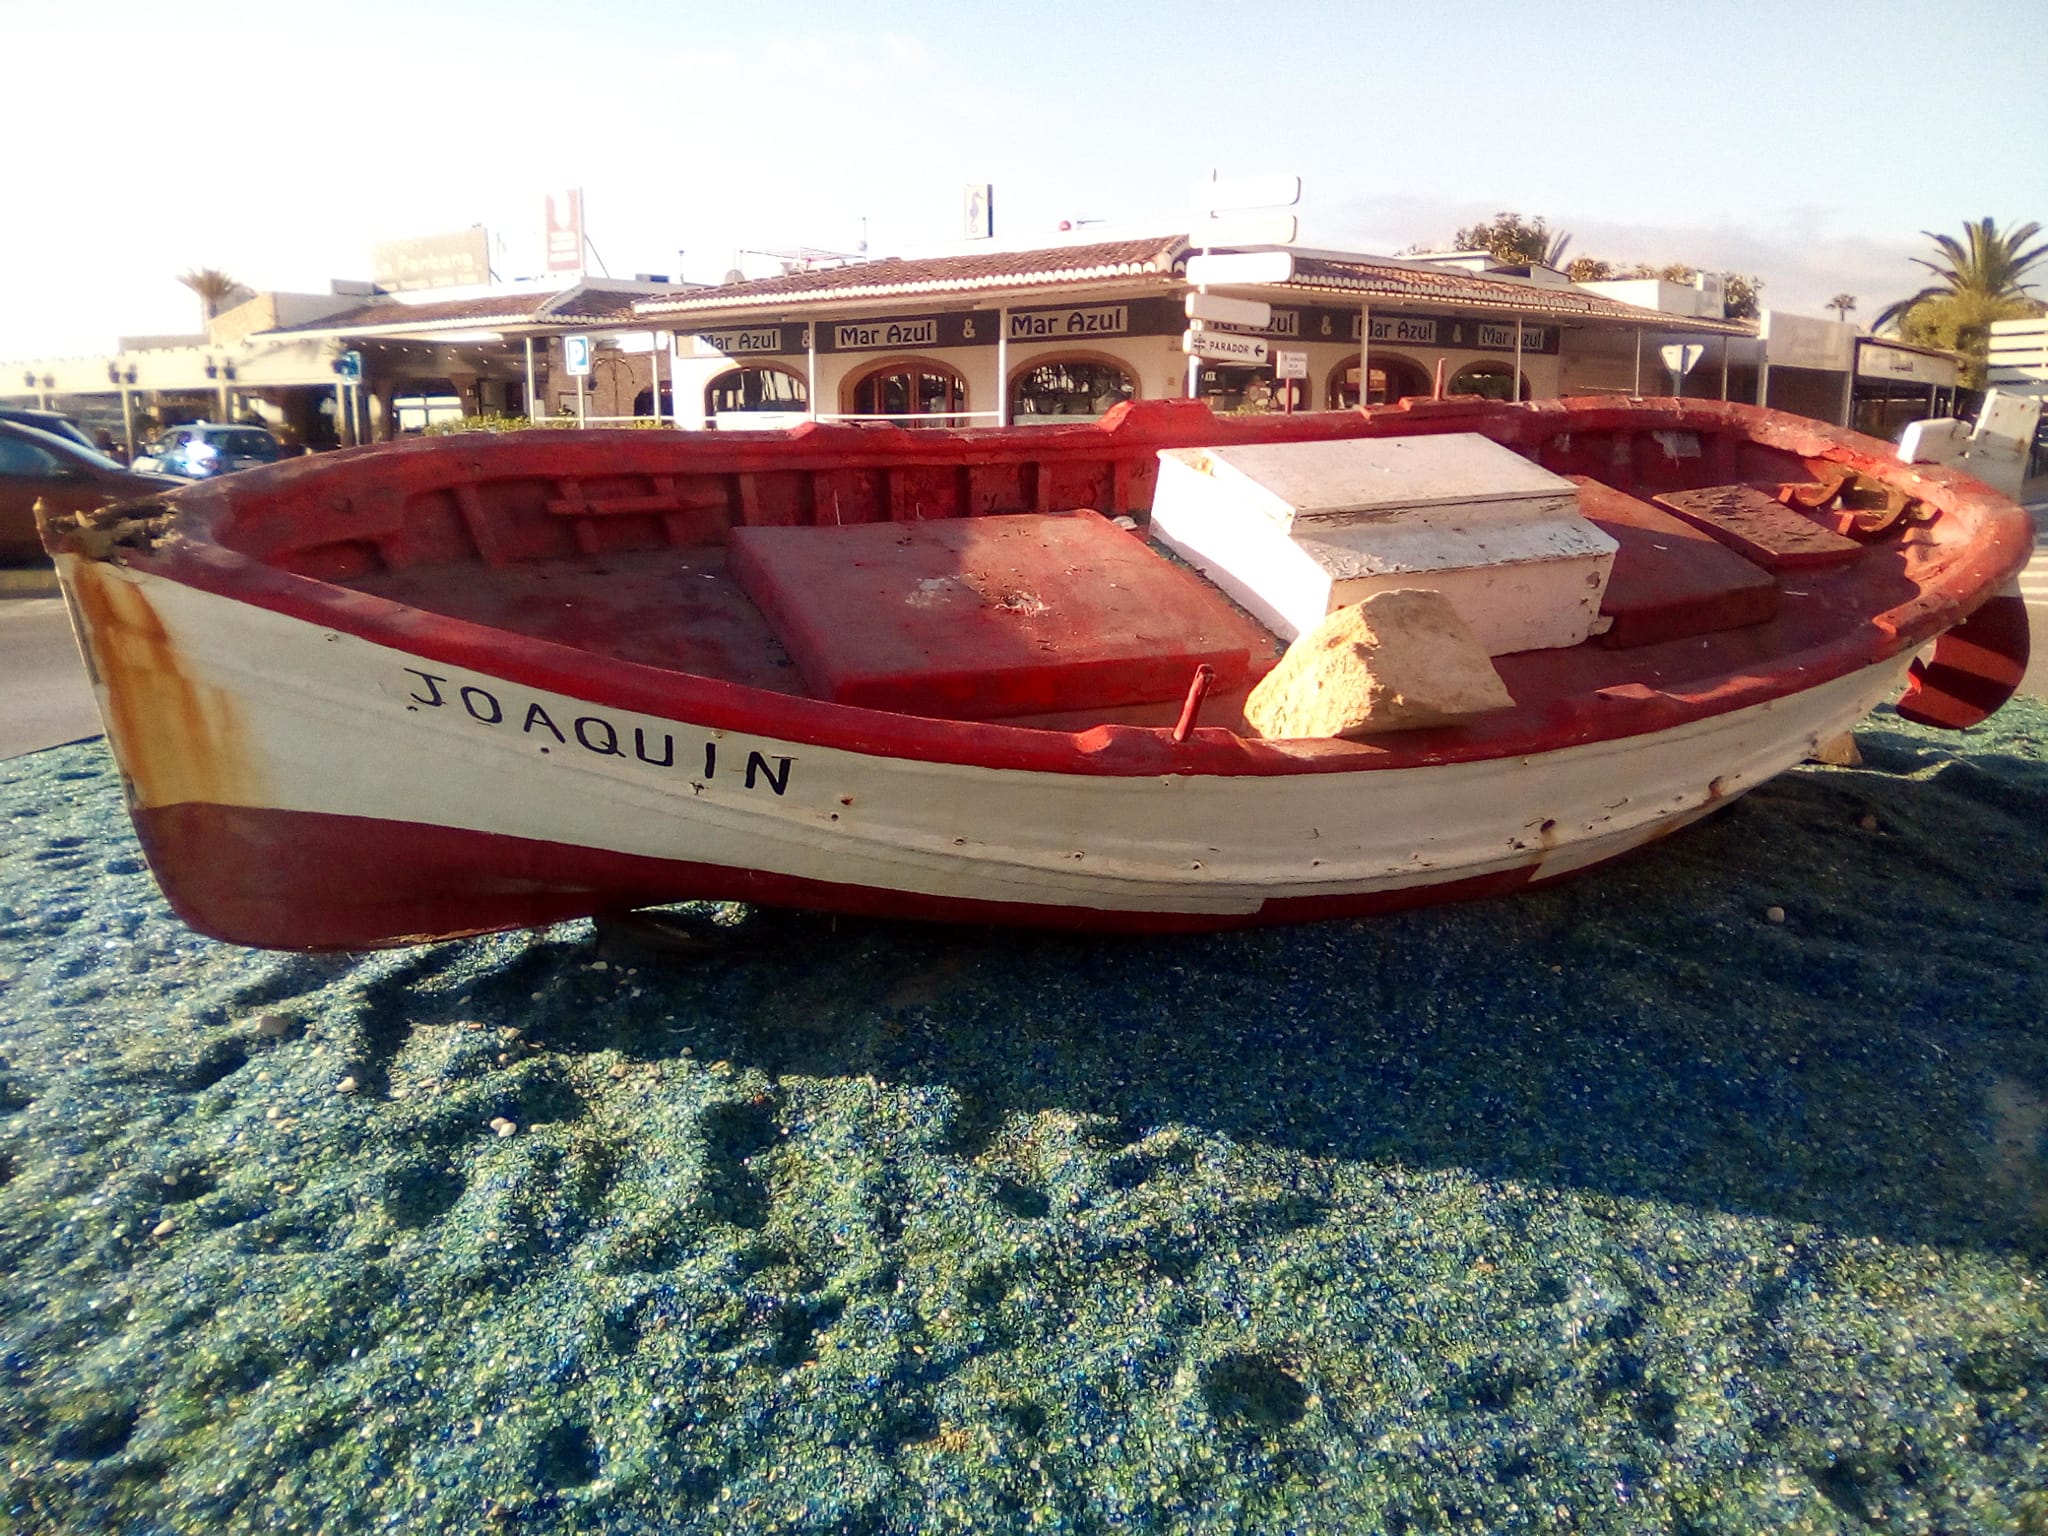 Destrozos en la barca que decora la entrada a la playa del Arenal